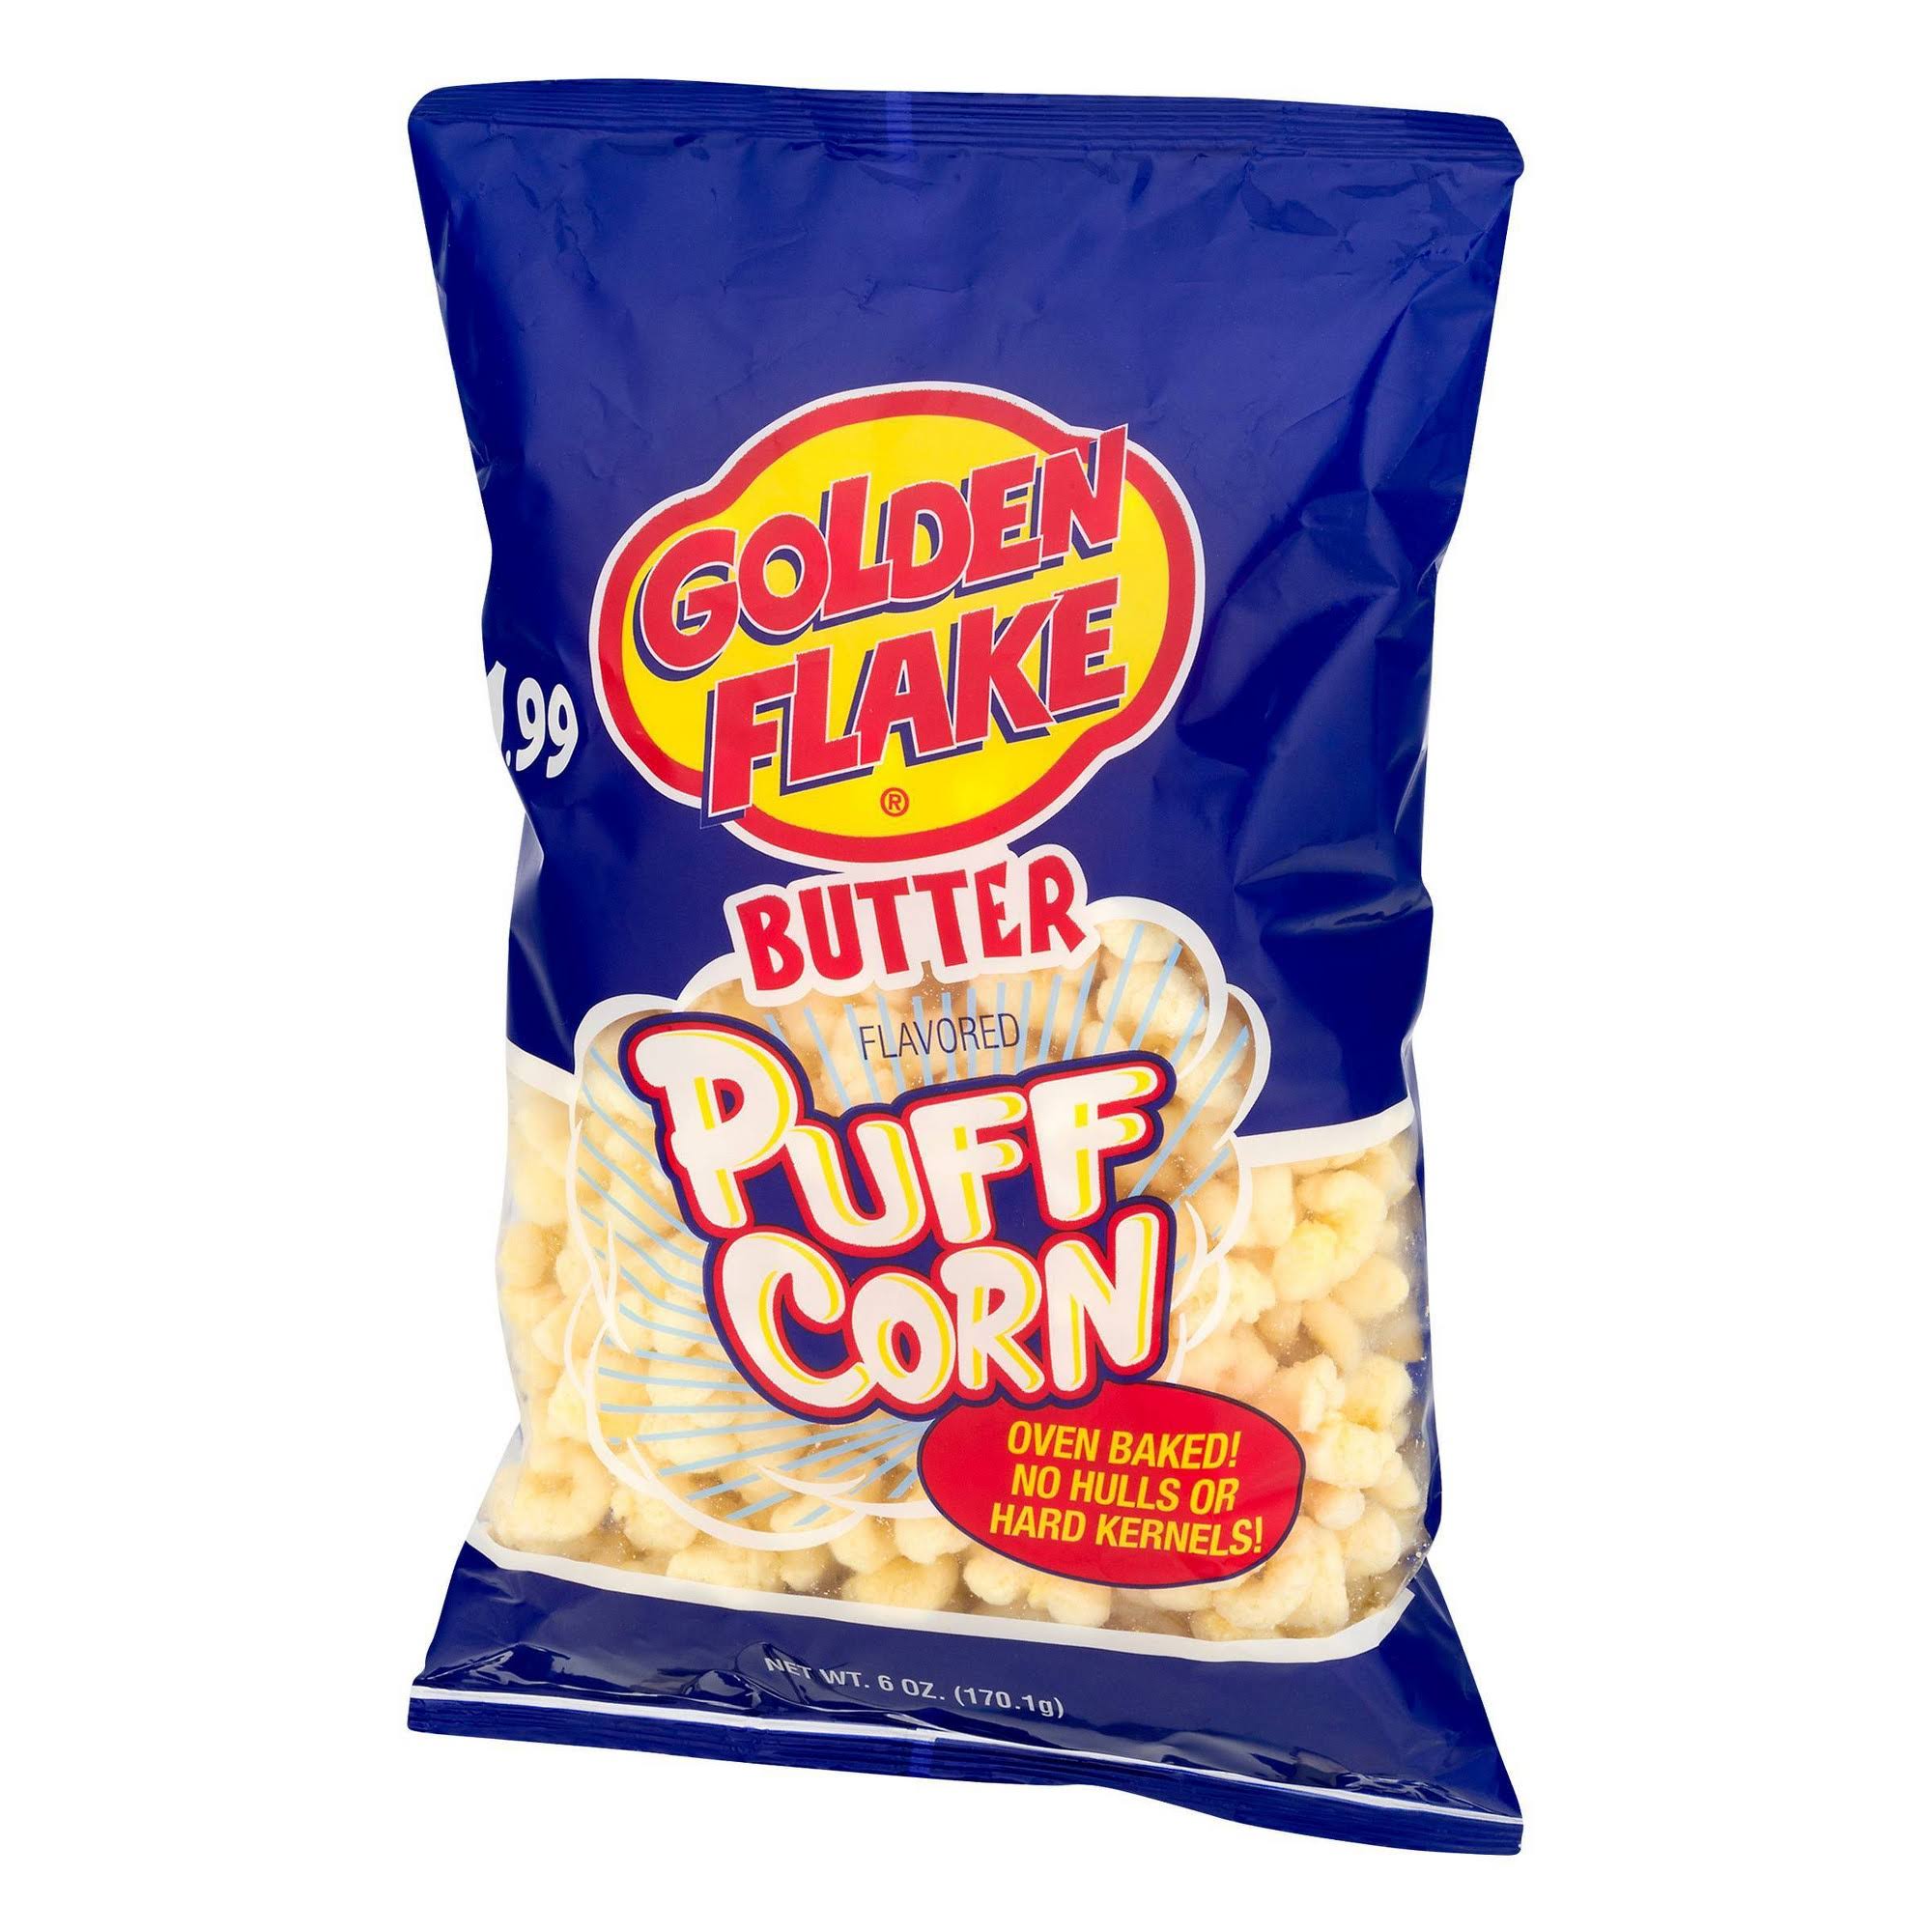 Golden Flake Puff Corn - Butter, 7oz, 4pk